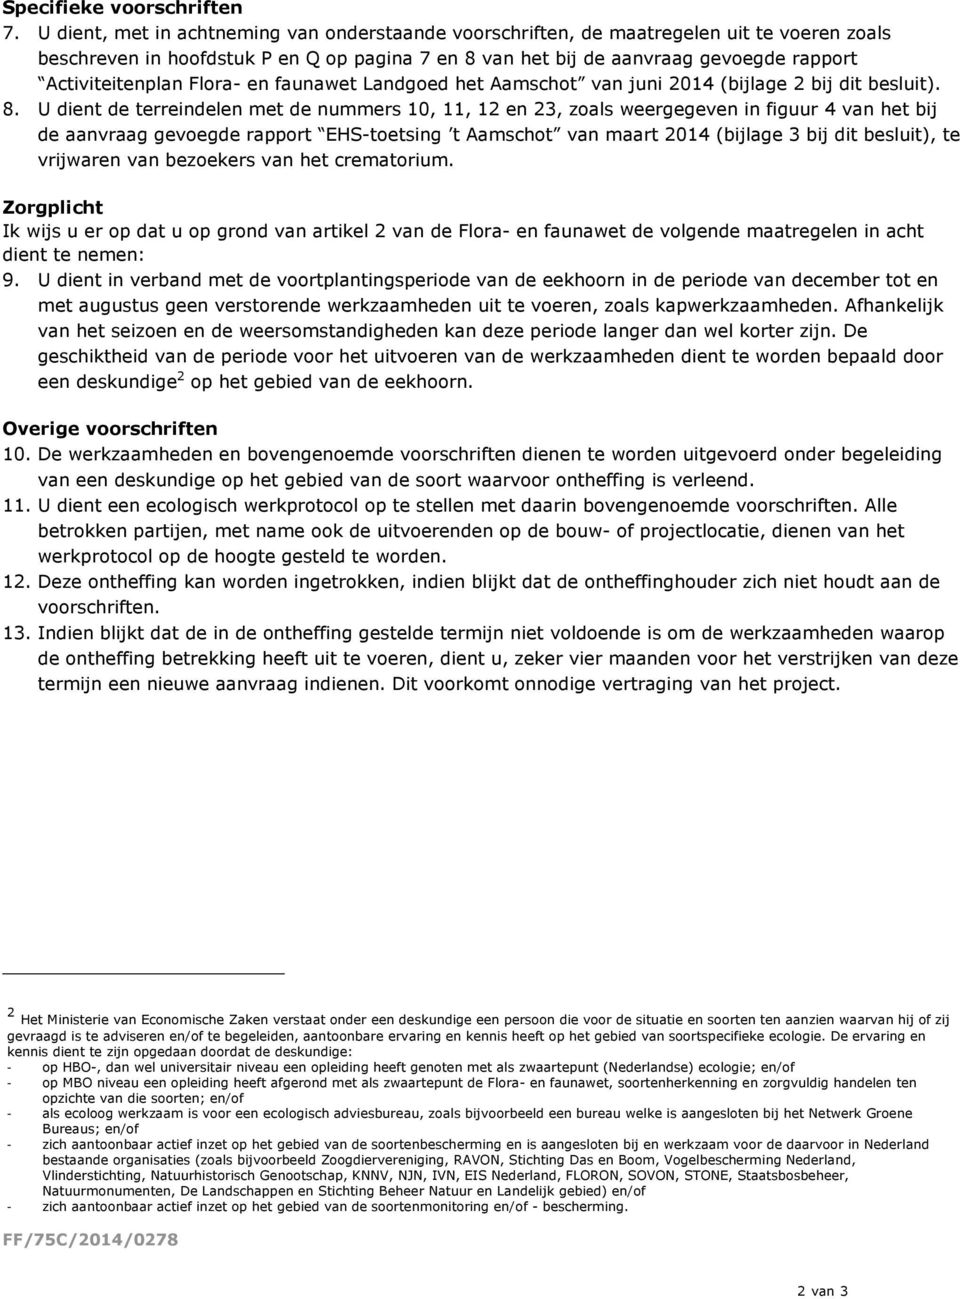 Flora- en faunawet Landgoed het Aamschot van juni 2014 (bijlage 2 bij dit besluit). 8.